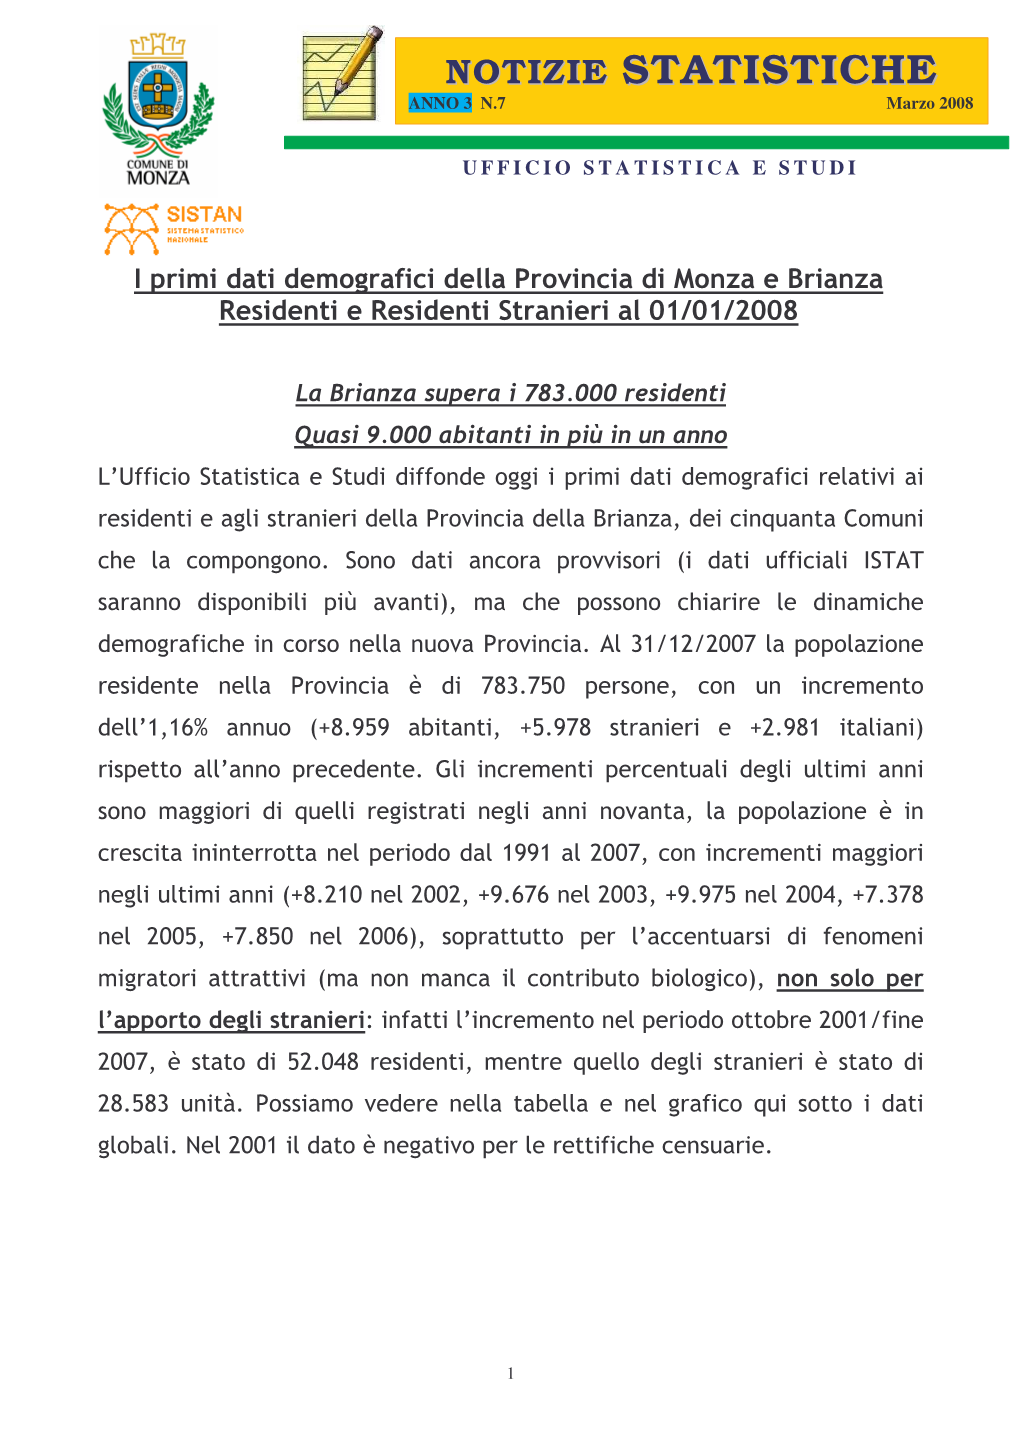 I Primi Dati Demografici Della Provincia Di Monza E Brianza Al 01/01/2008